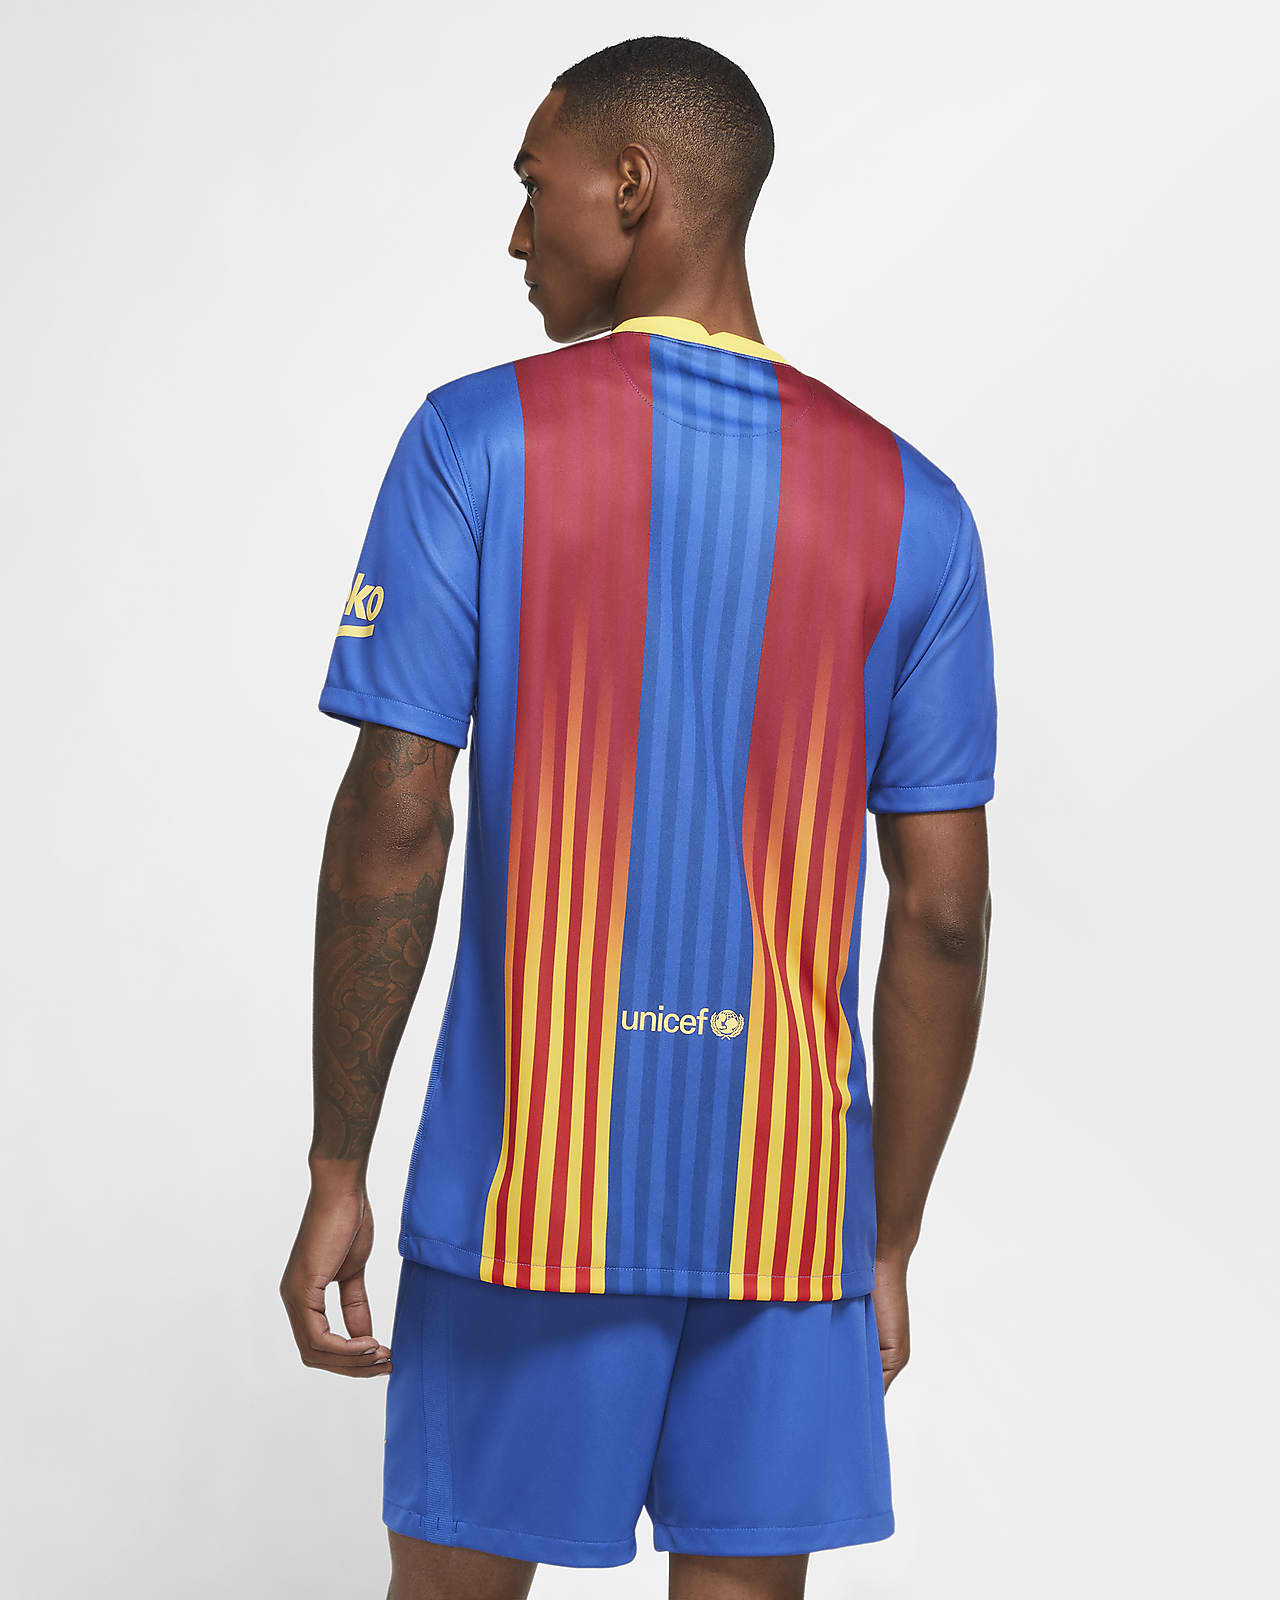 Nike公式 Fc バルセロナ スタジアム メンズ サッカーユニフォーム オンラインストア 通販サイト